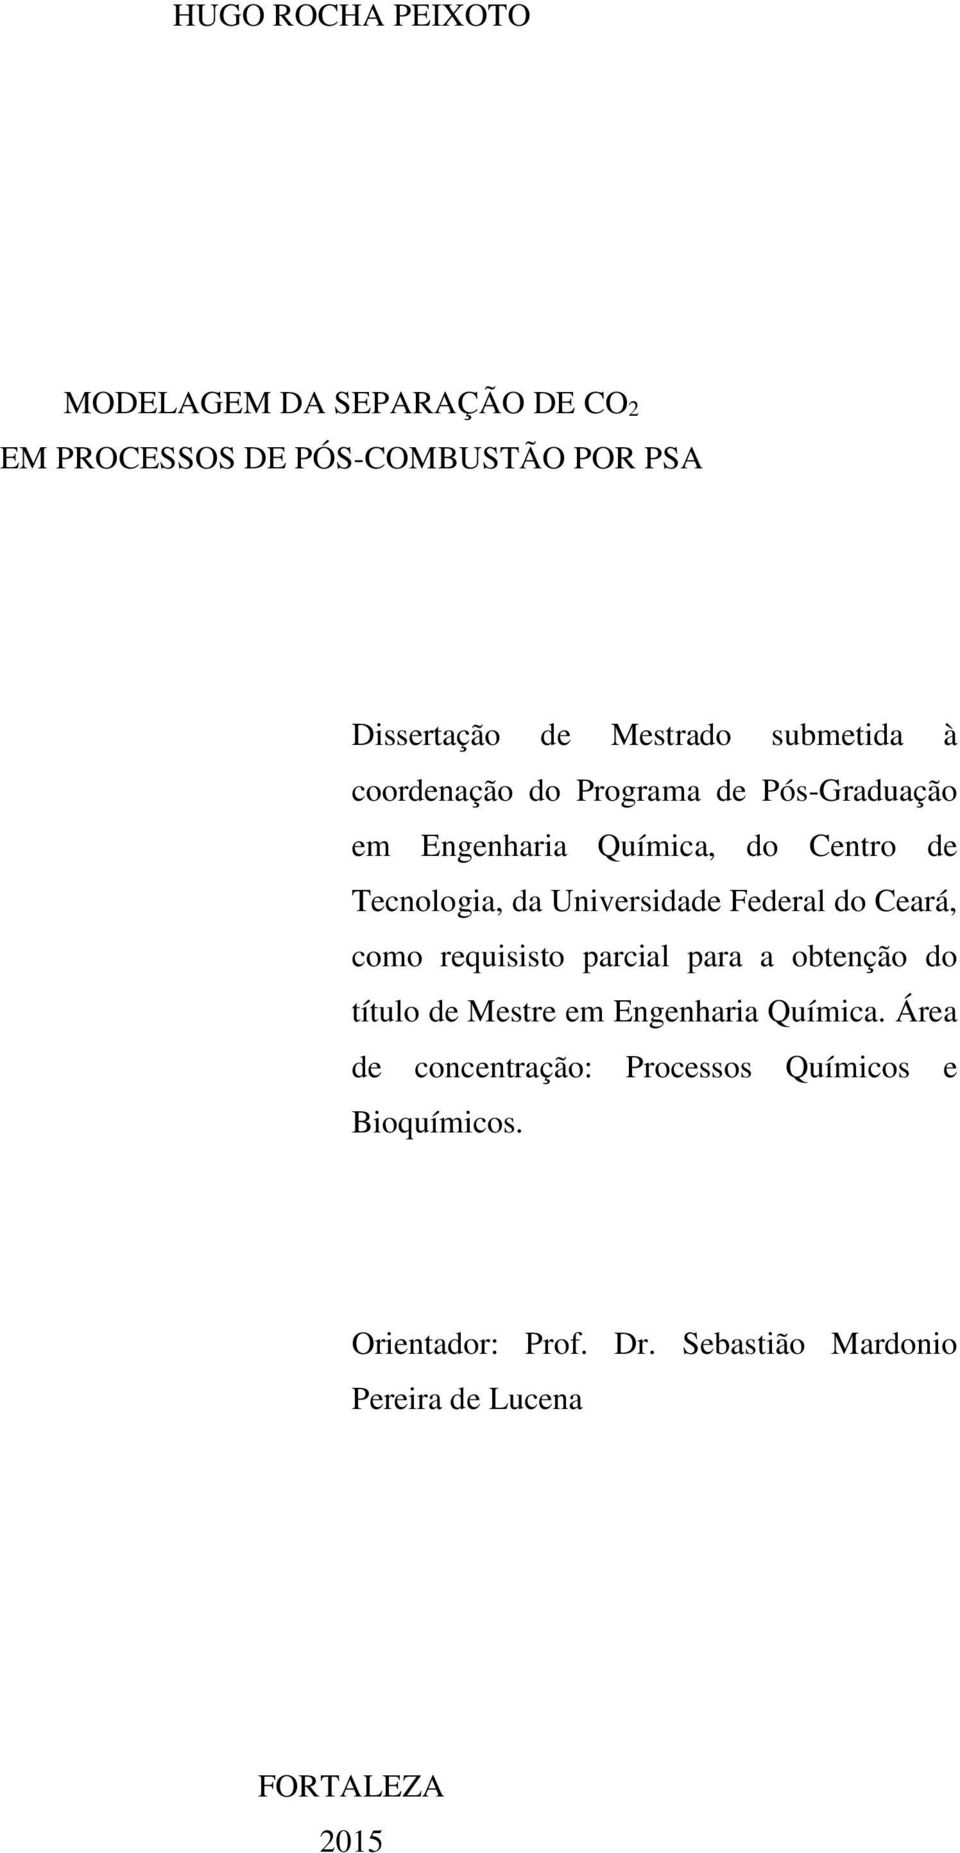 Universidade Federal do Ceará, como requisisto parcial para a obtenção do título de Mestre em Engenharia Química.